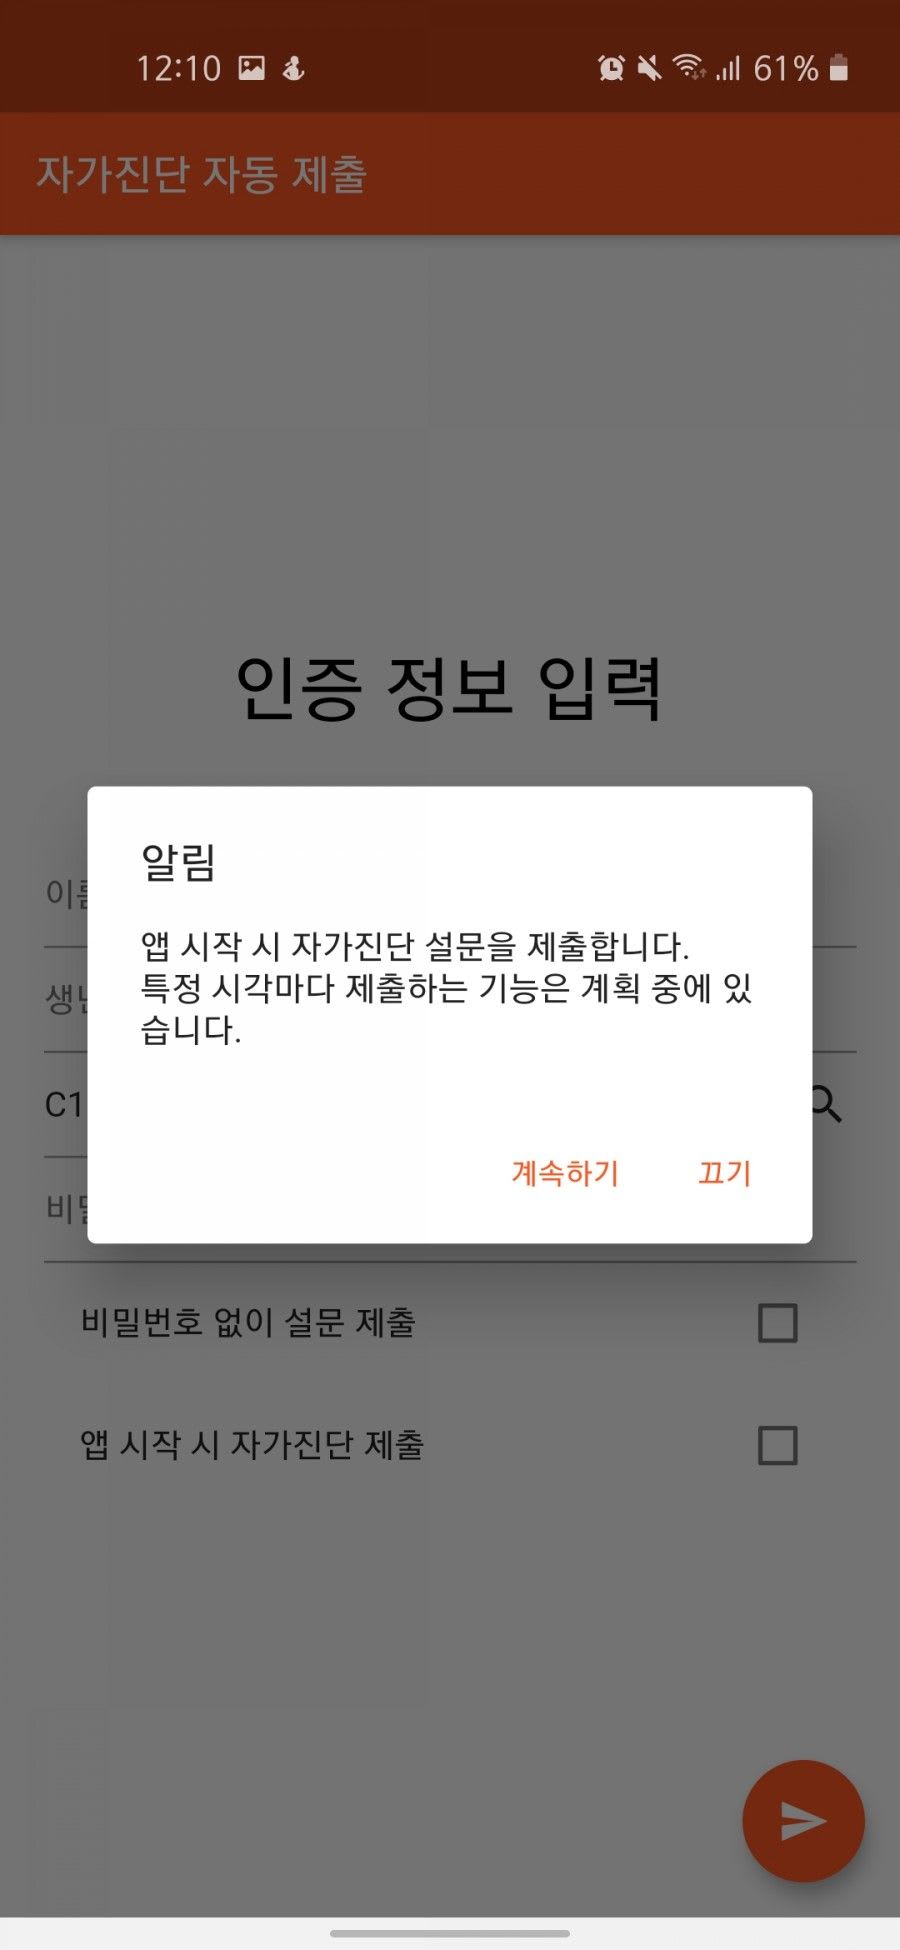 자가진단 자동화 앱 / 앱 시작 시 설문 전송